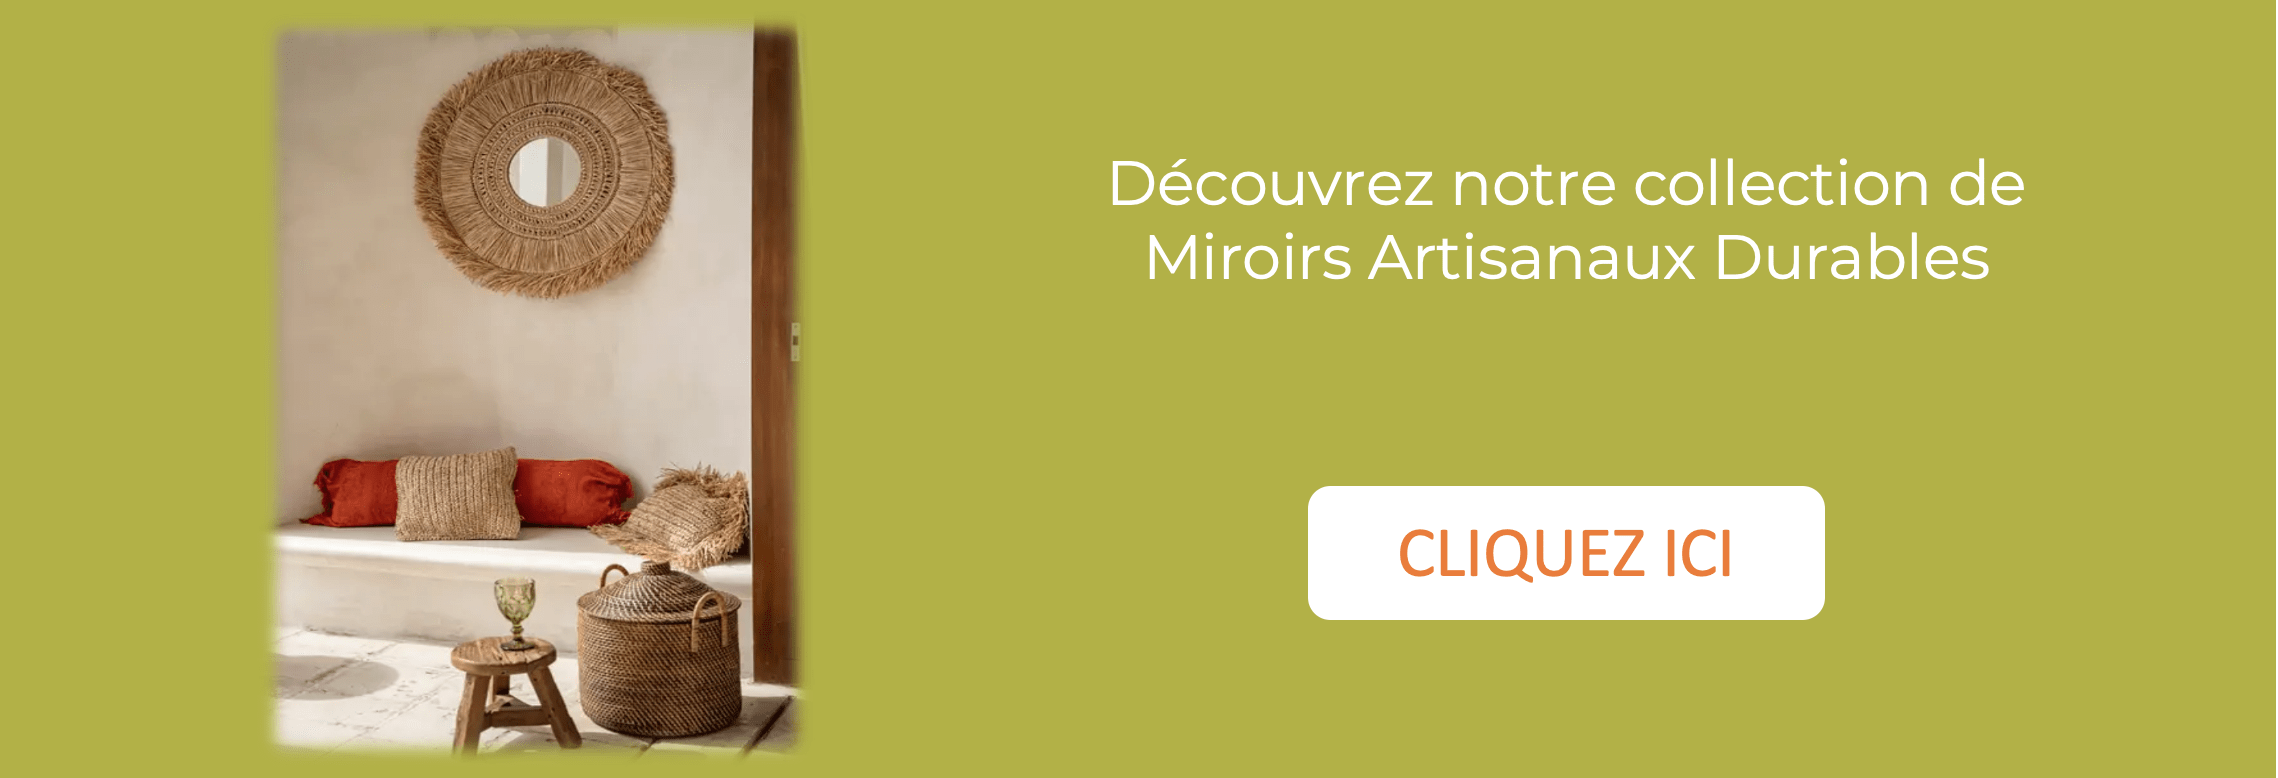 Comment reconnaître un miroir artisanal durable ?